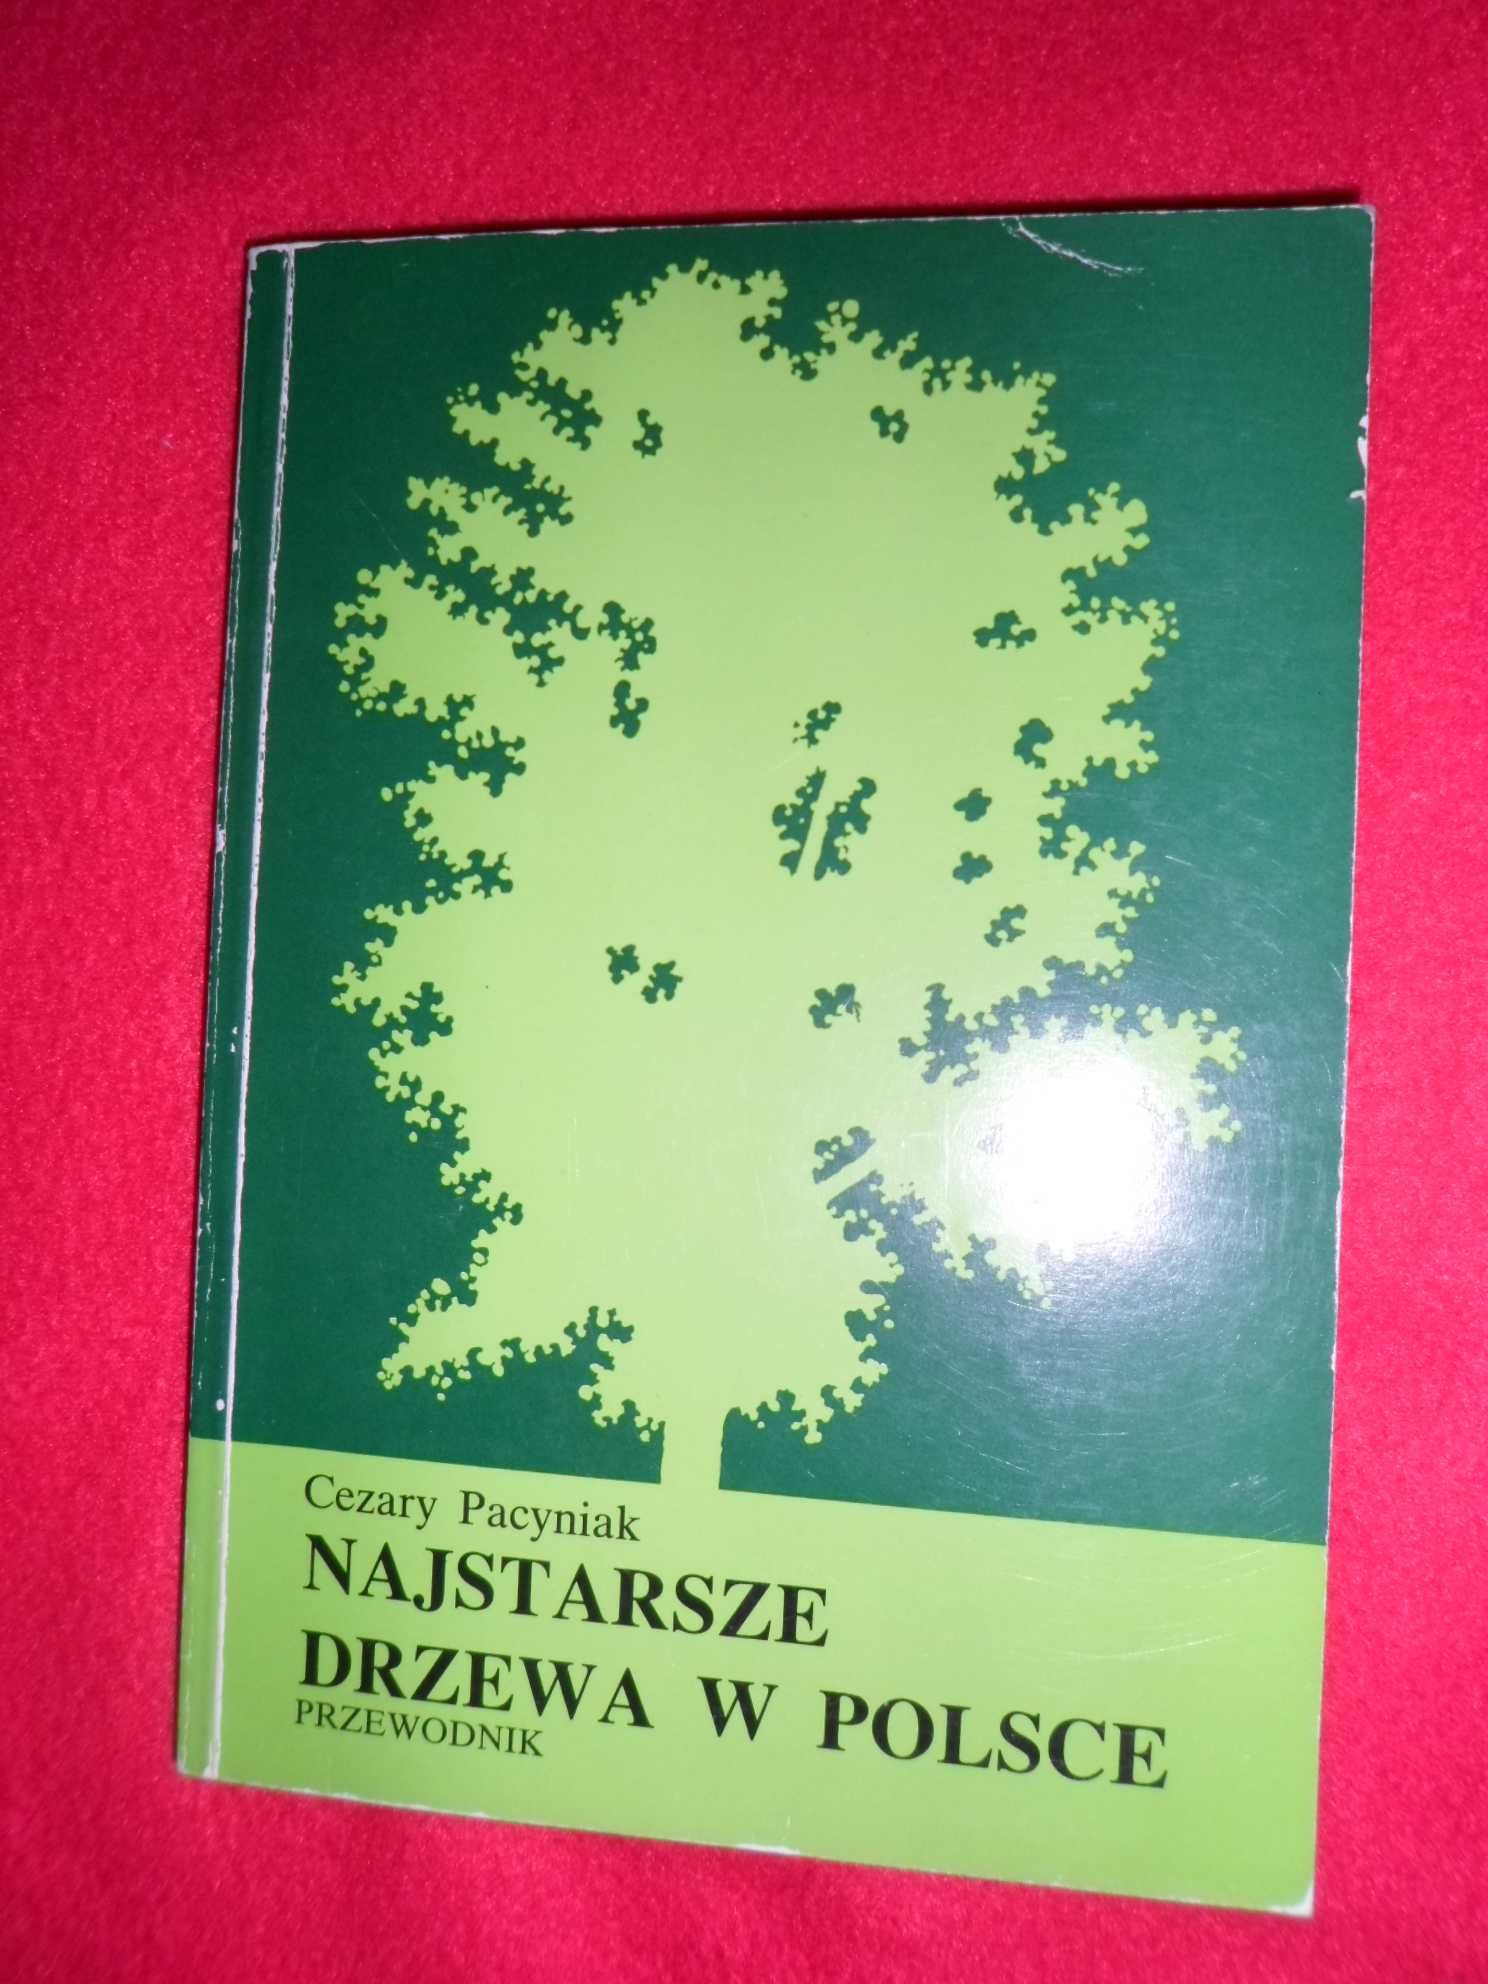 Cezary Pacyniak - Najstarsze drzewa w Polsce Przewodnik